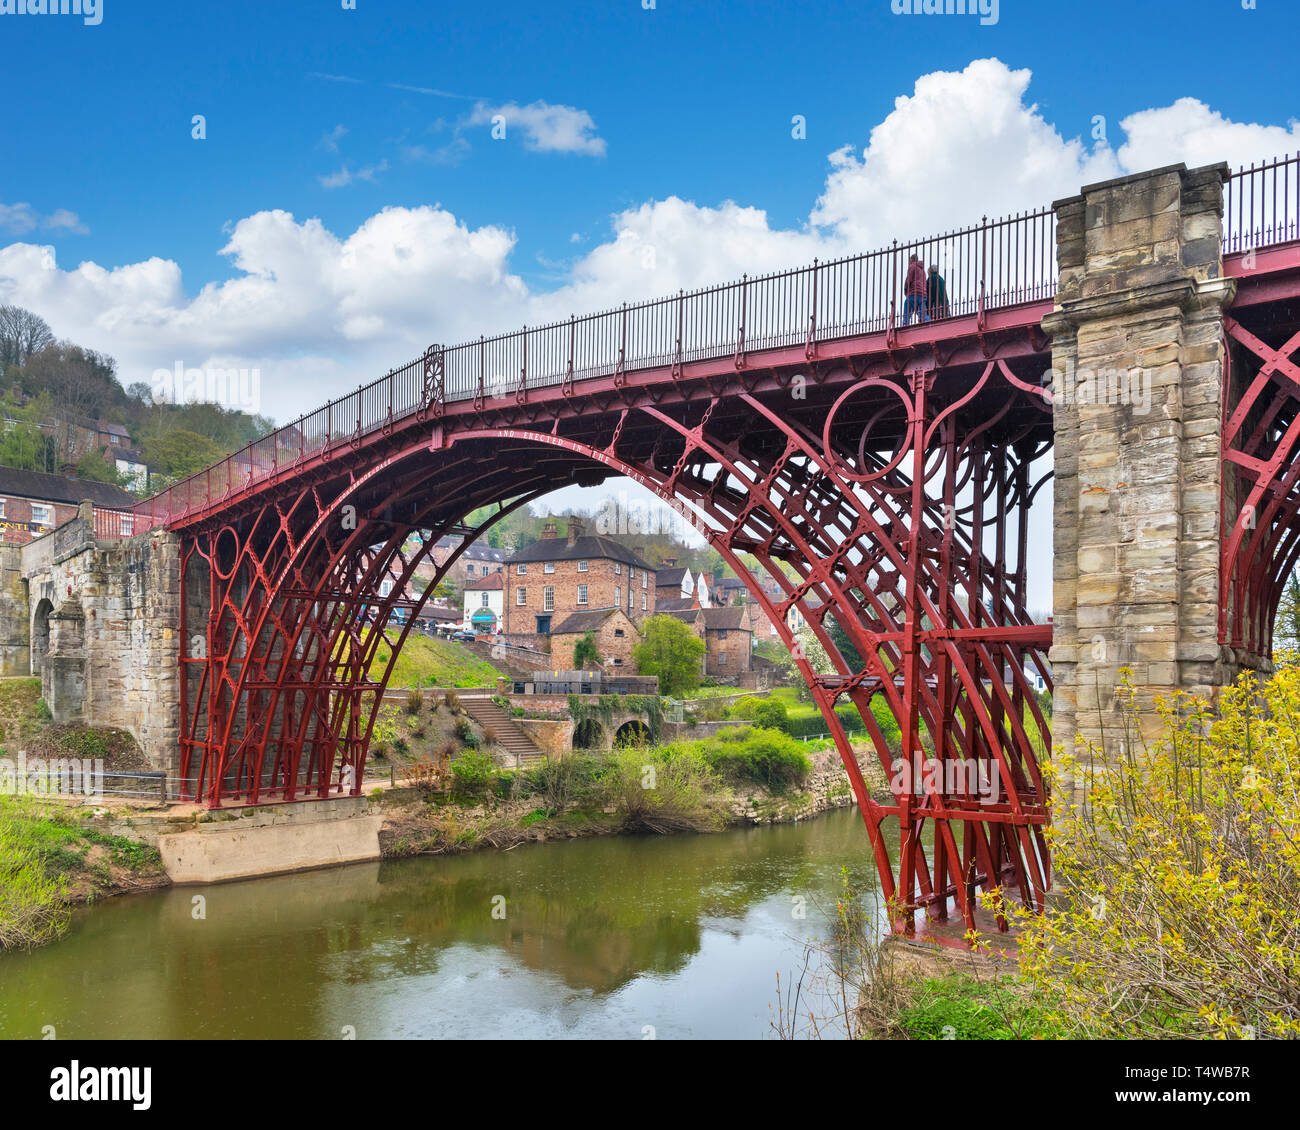 Ironbridge Gorge, Reino Unido. El histórico Puente de Hierro del siglo XVIII a través del río Severn, Ironbridge, Coalbrookdale, Shropshire, Inglaterra, Reino Unido. Foto de stock